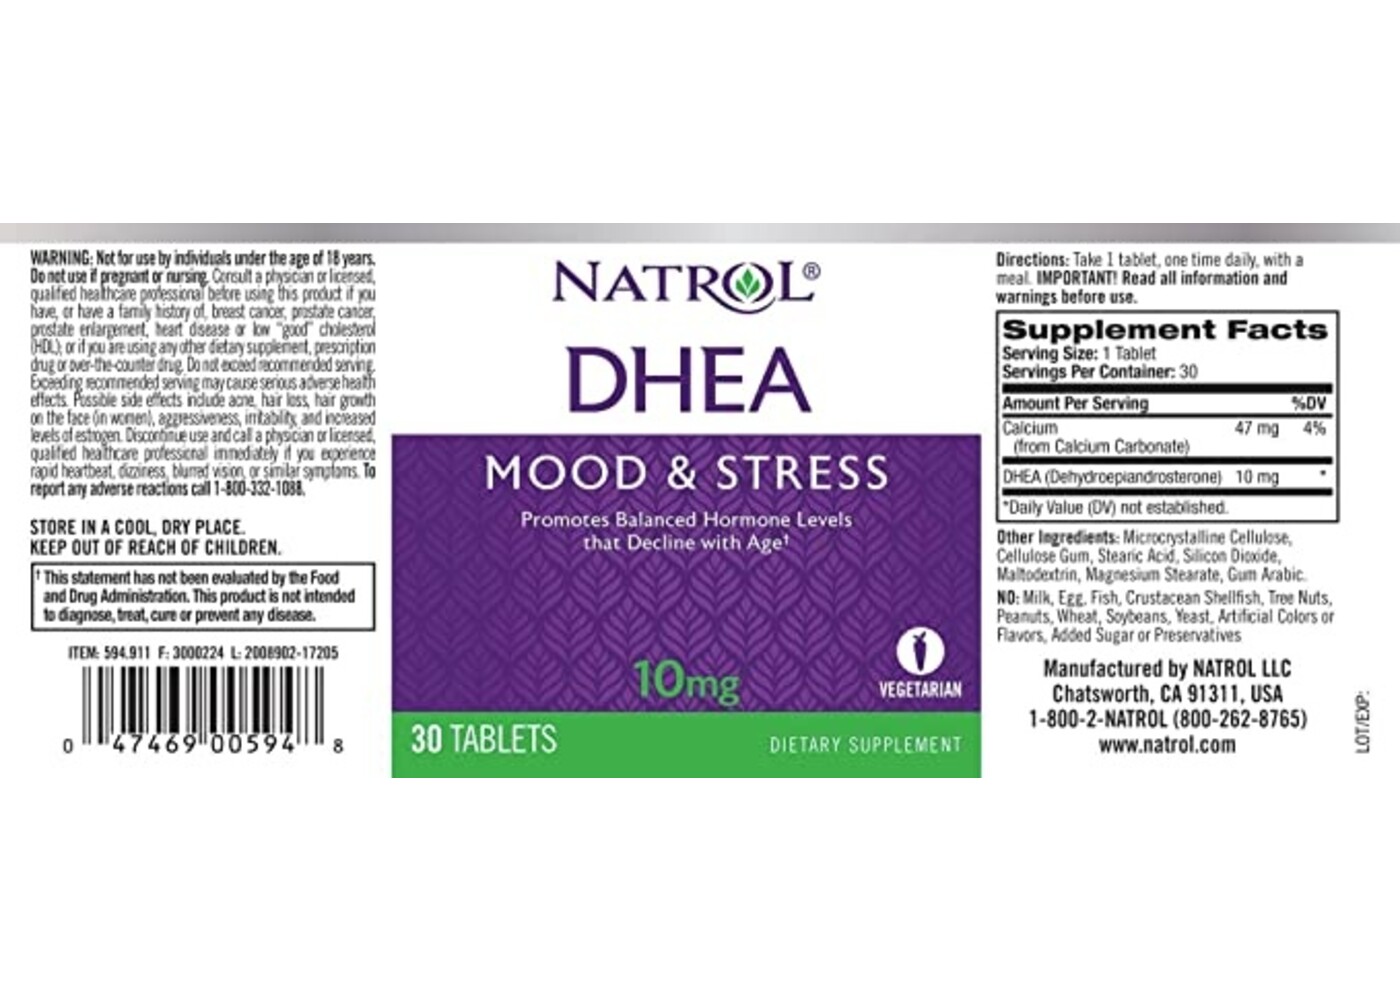 Natrol Comprar DHEA, 10mg, 30 Comprimidos